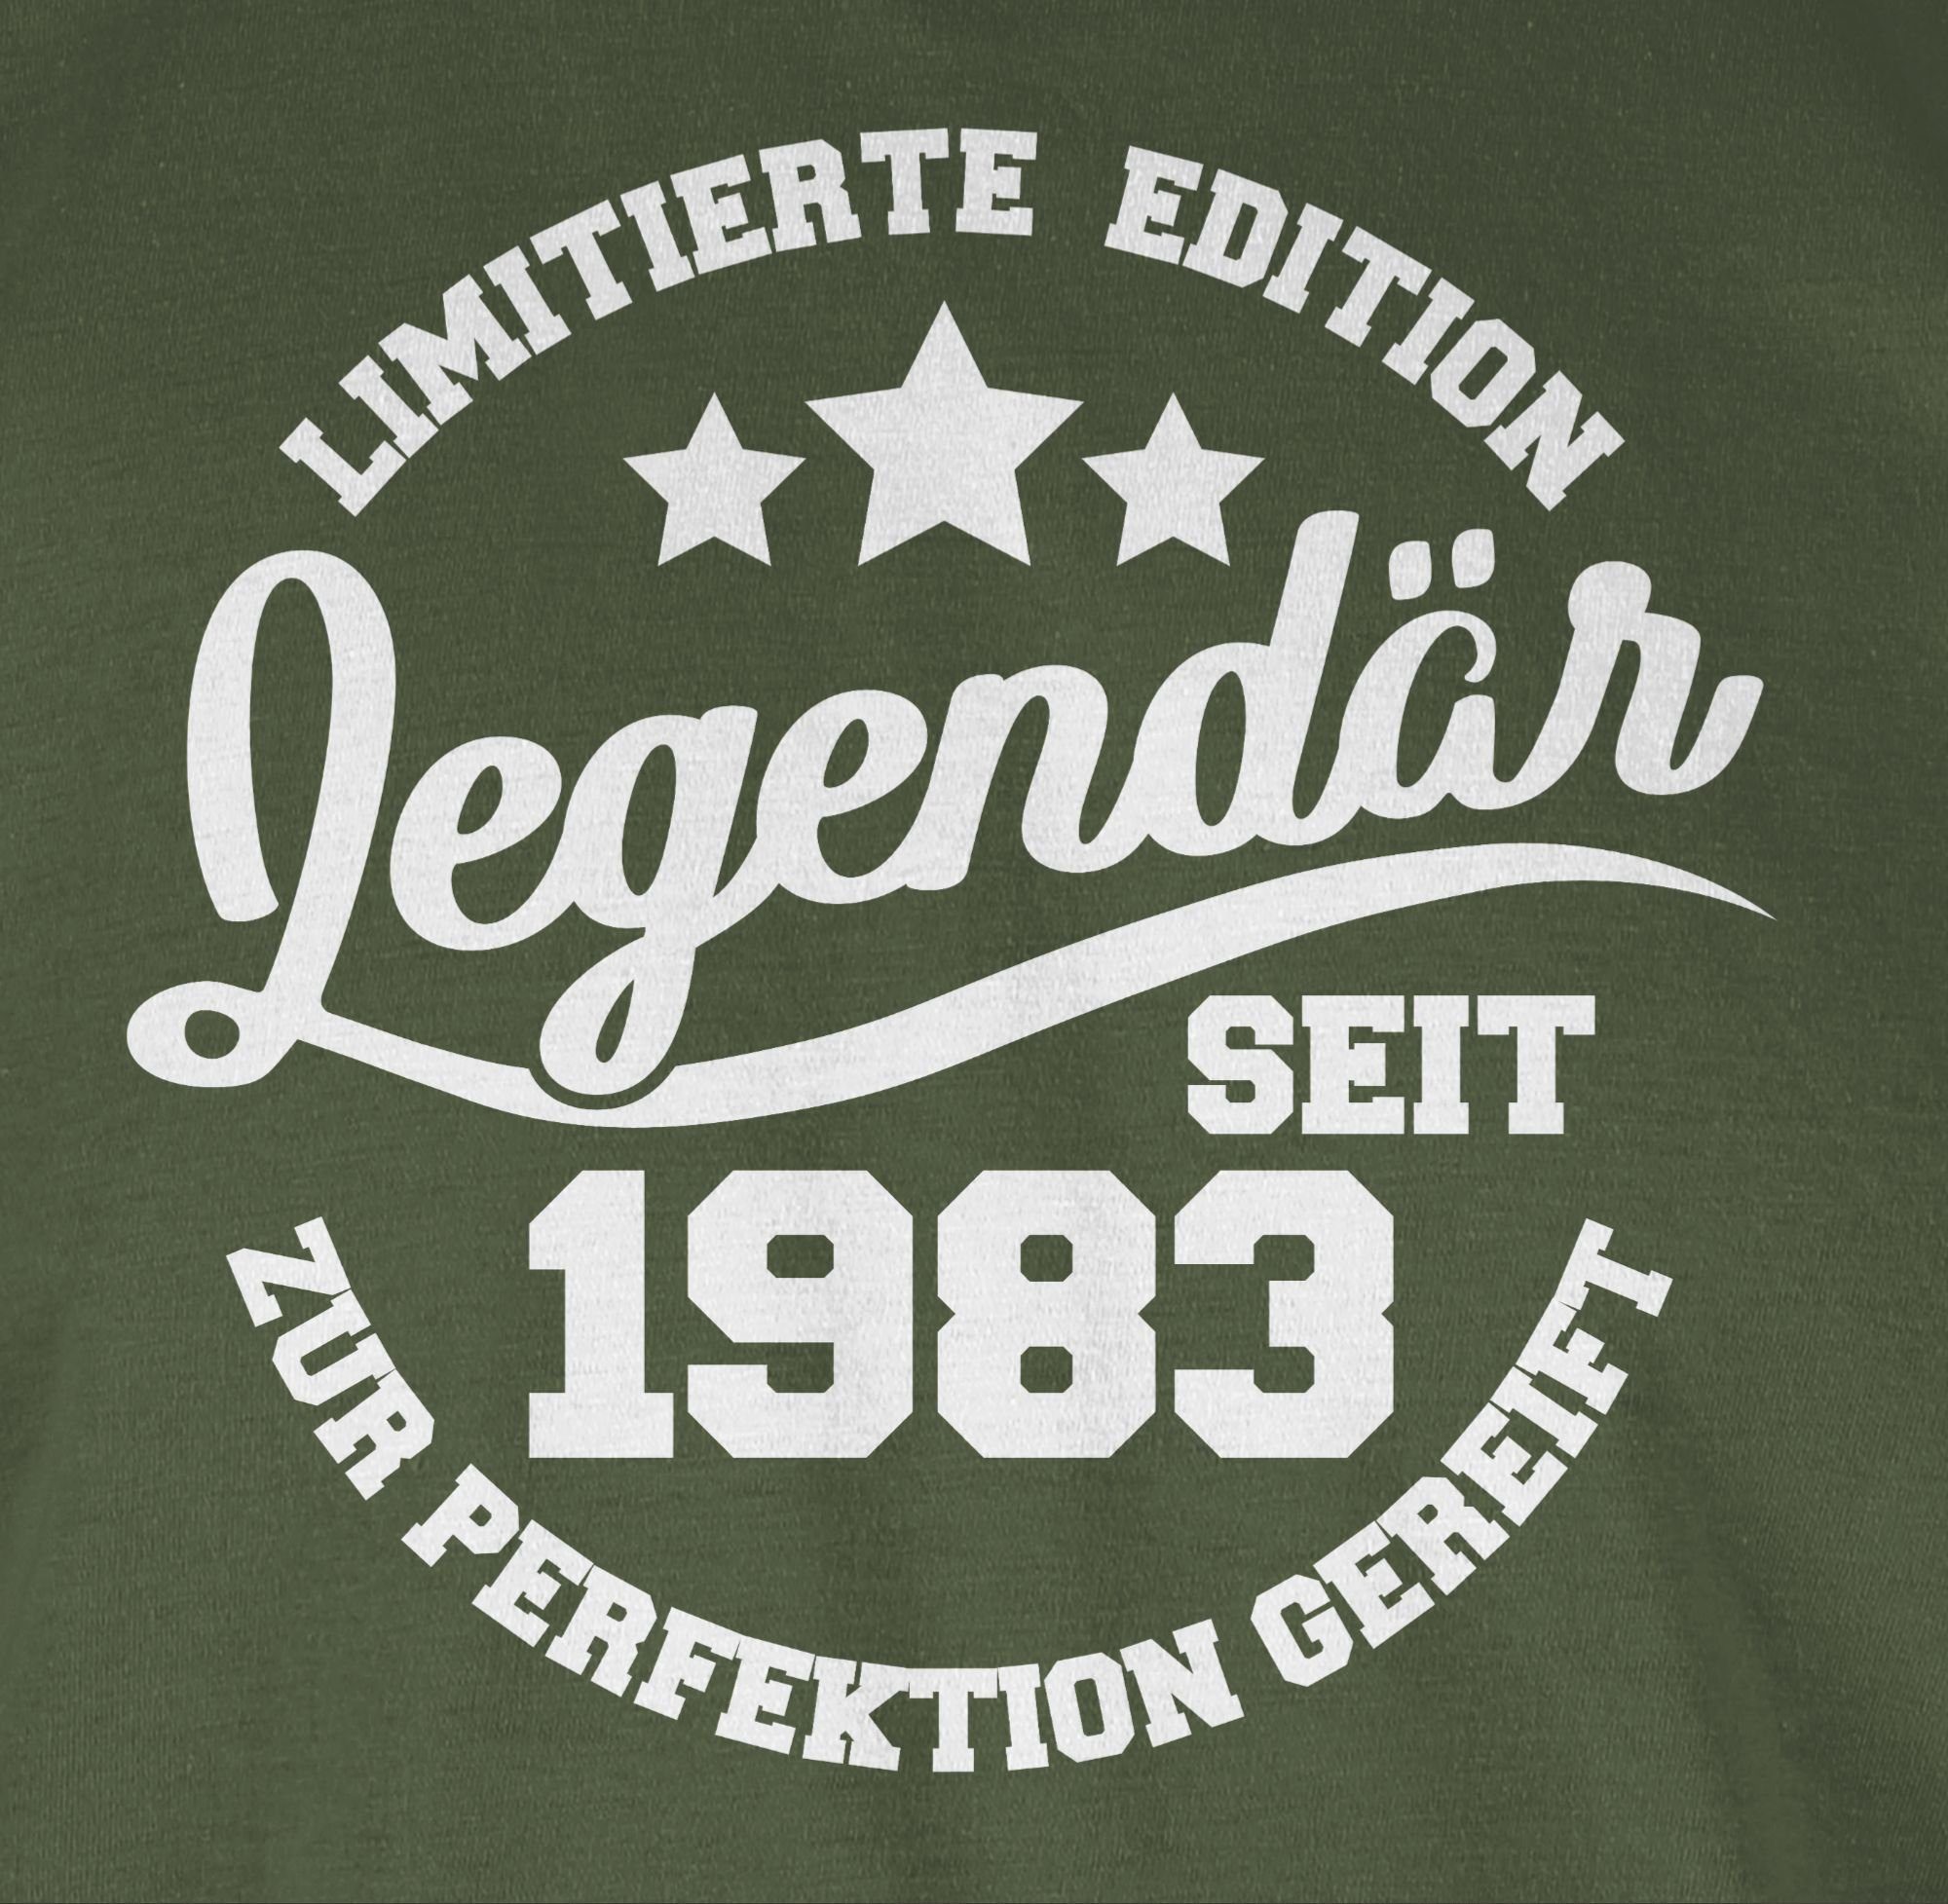 1983 seit weiß Army 40. T-Shirt Shirtracer Legendär - 2 Grün Geburtstag